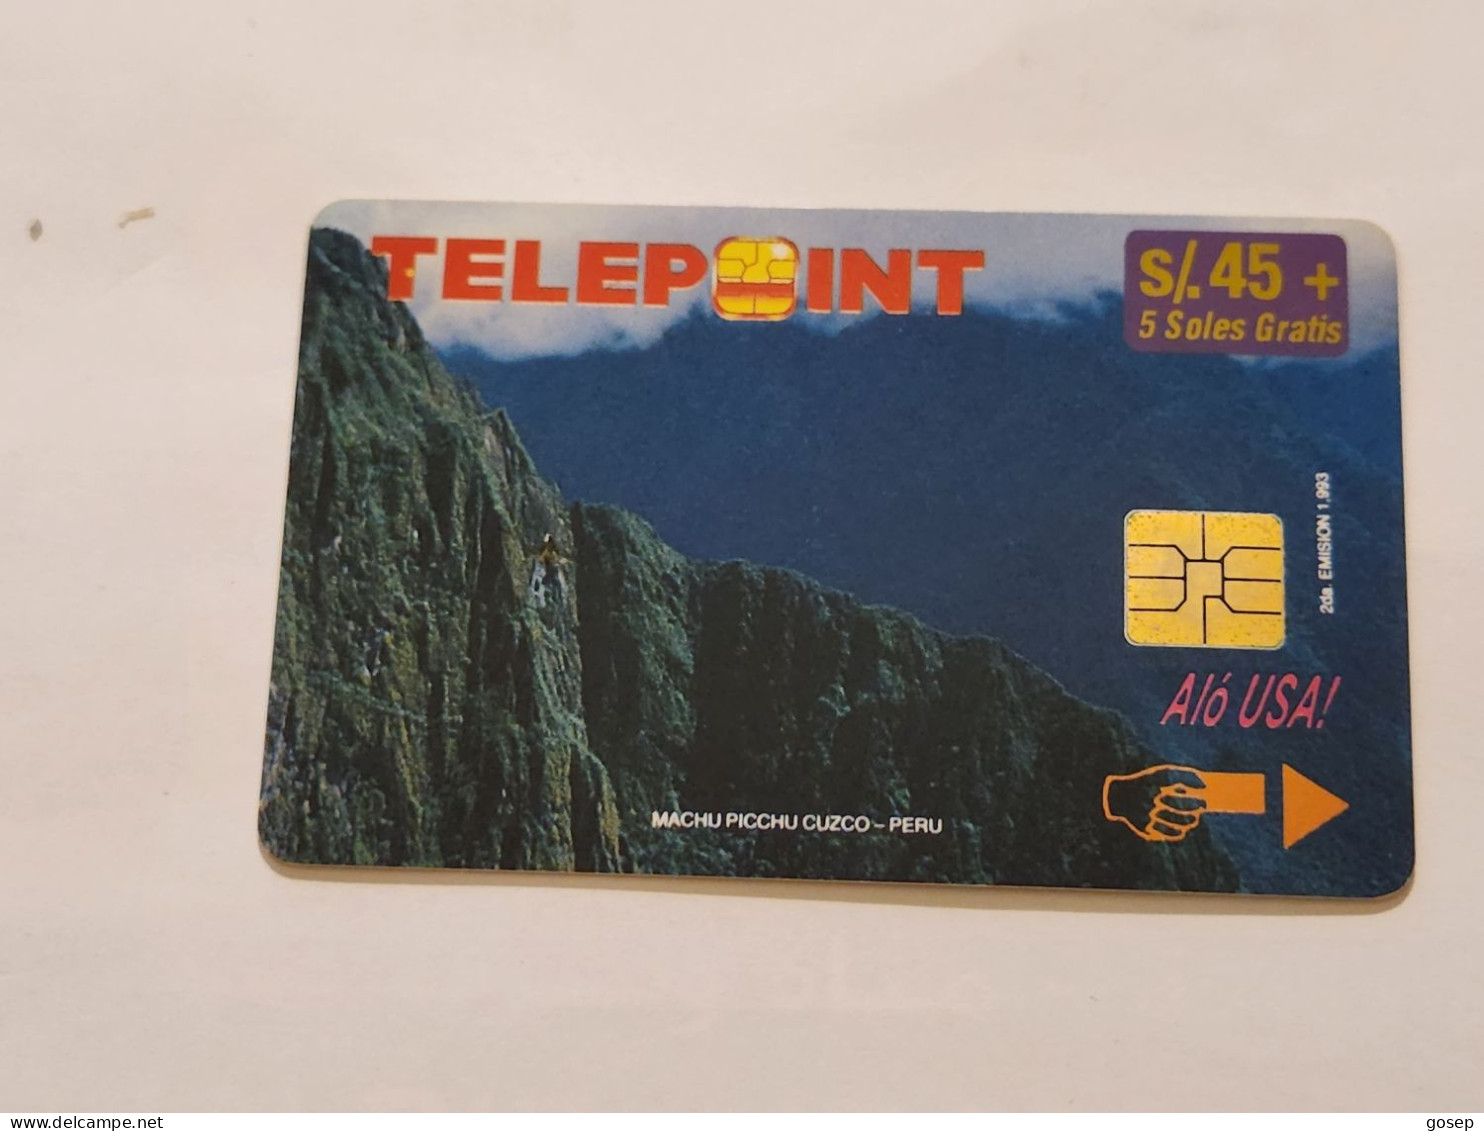 PERU-(PER-TE-33)-Machu Picchu Puzzle-Reverse-2/4(4)(s/45)(PTD001/B2-EX8500)-(tirage-8.500)-used Card+1cars Prepiad,free - Peru